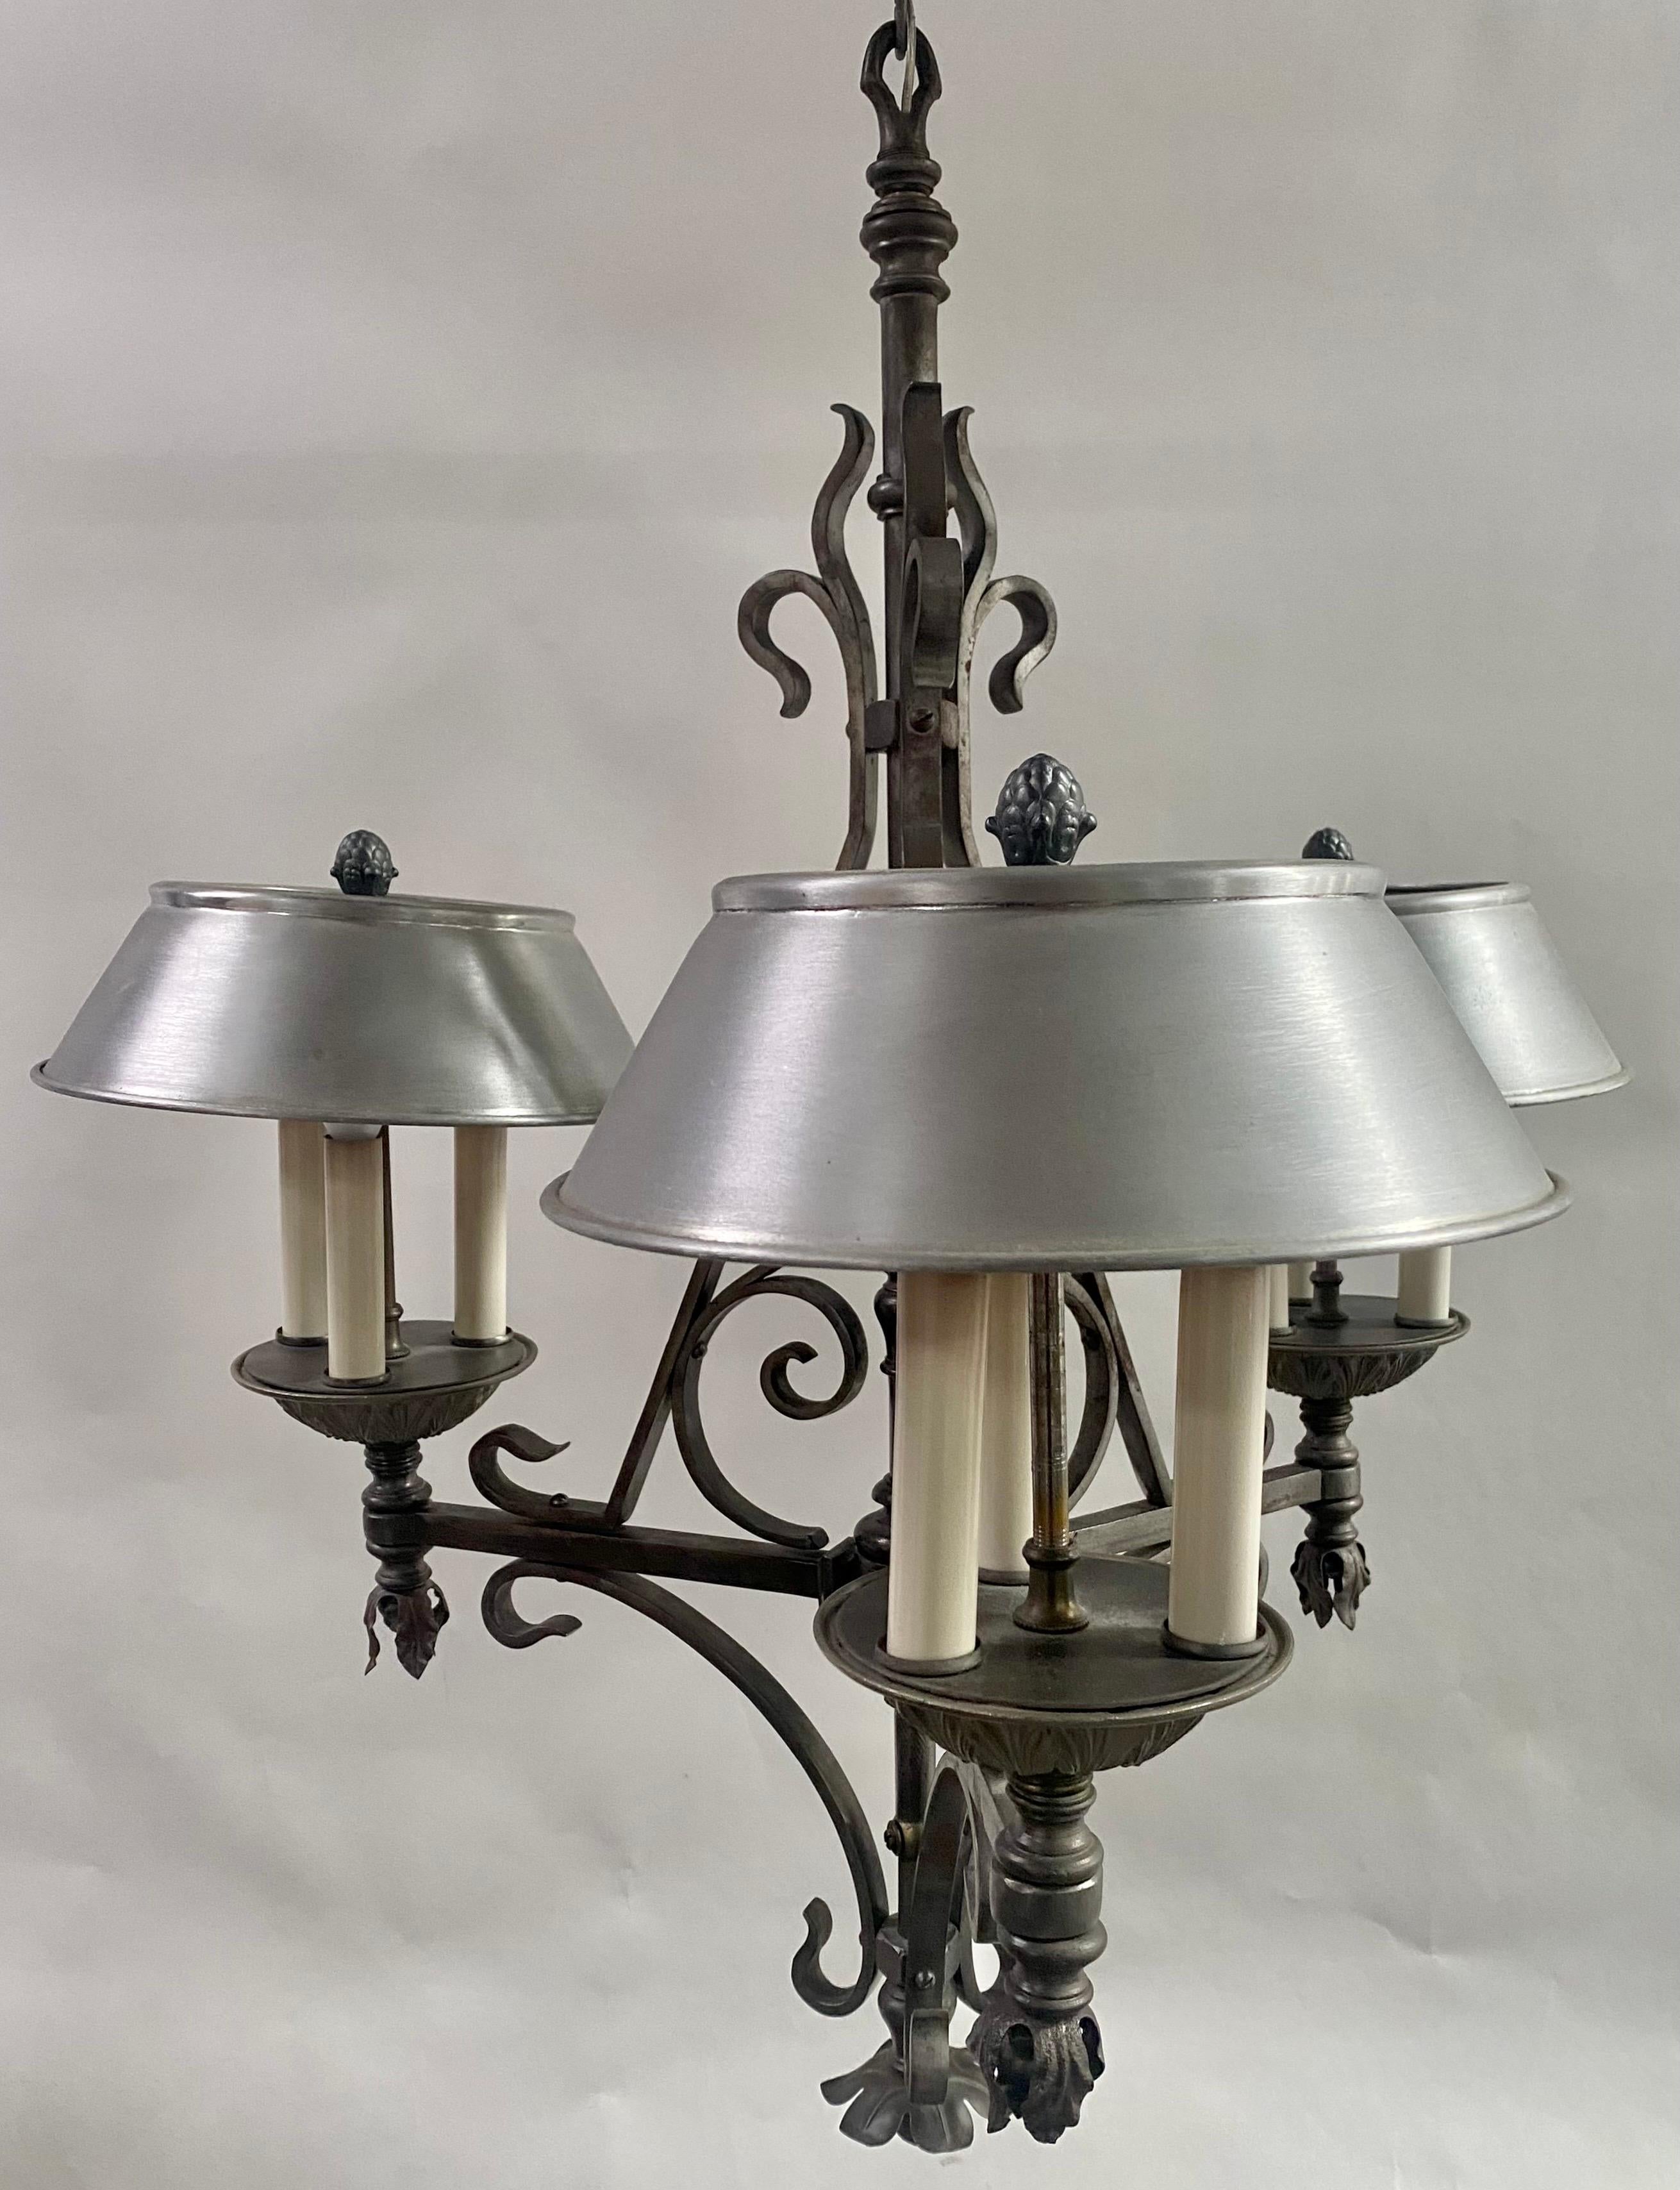 Ein 1930er  Französischer Kronleuchter aus Schmiedeeisen im viktorianischen Stil. Diese prächtige Leuchte zeichnet sich durch ein kompliziertes Design aus, das durch drei anmutig gebogene horizontale Arme gekennzeichnet ist, die jeweils in einer